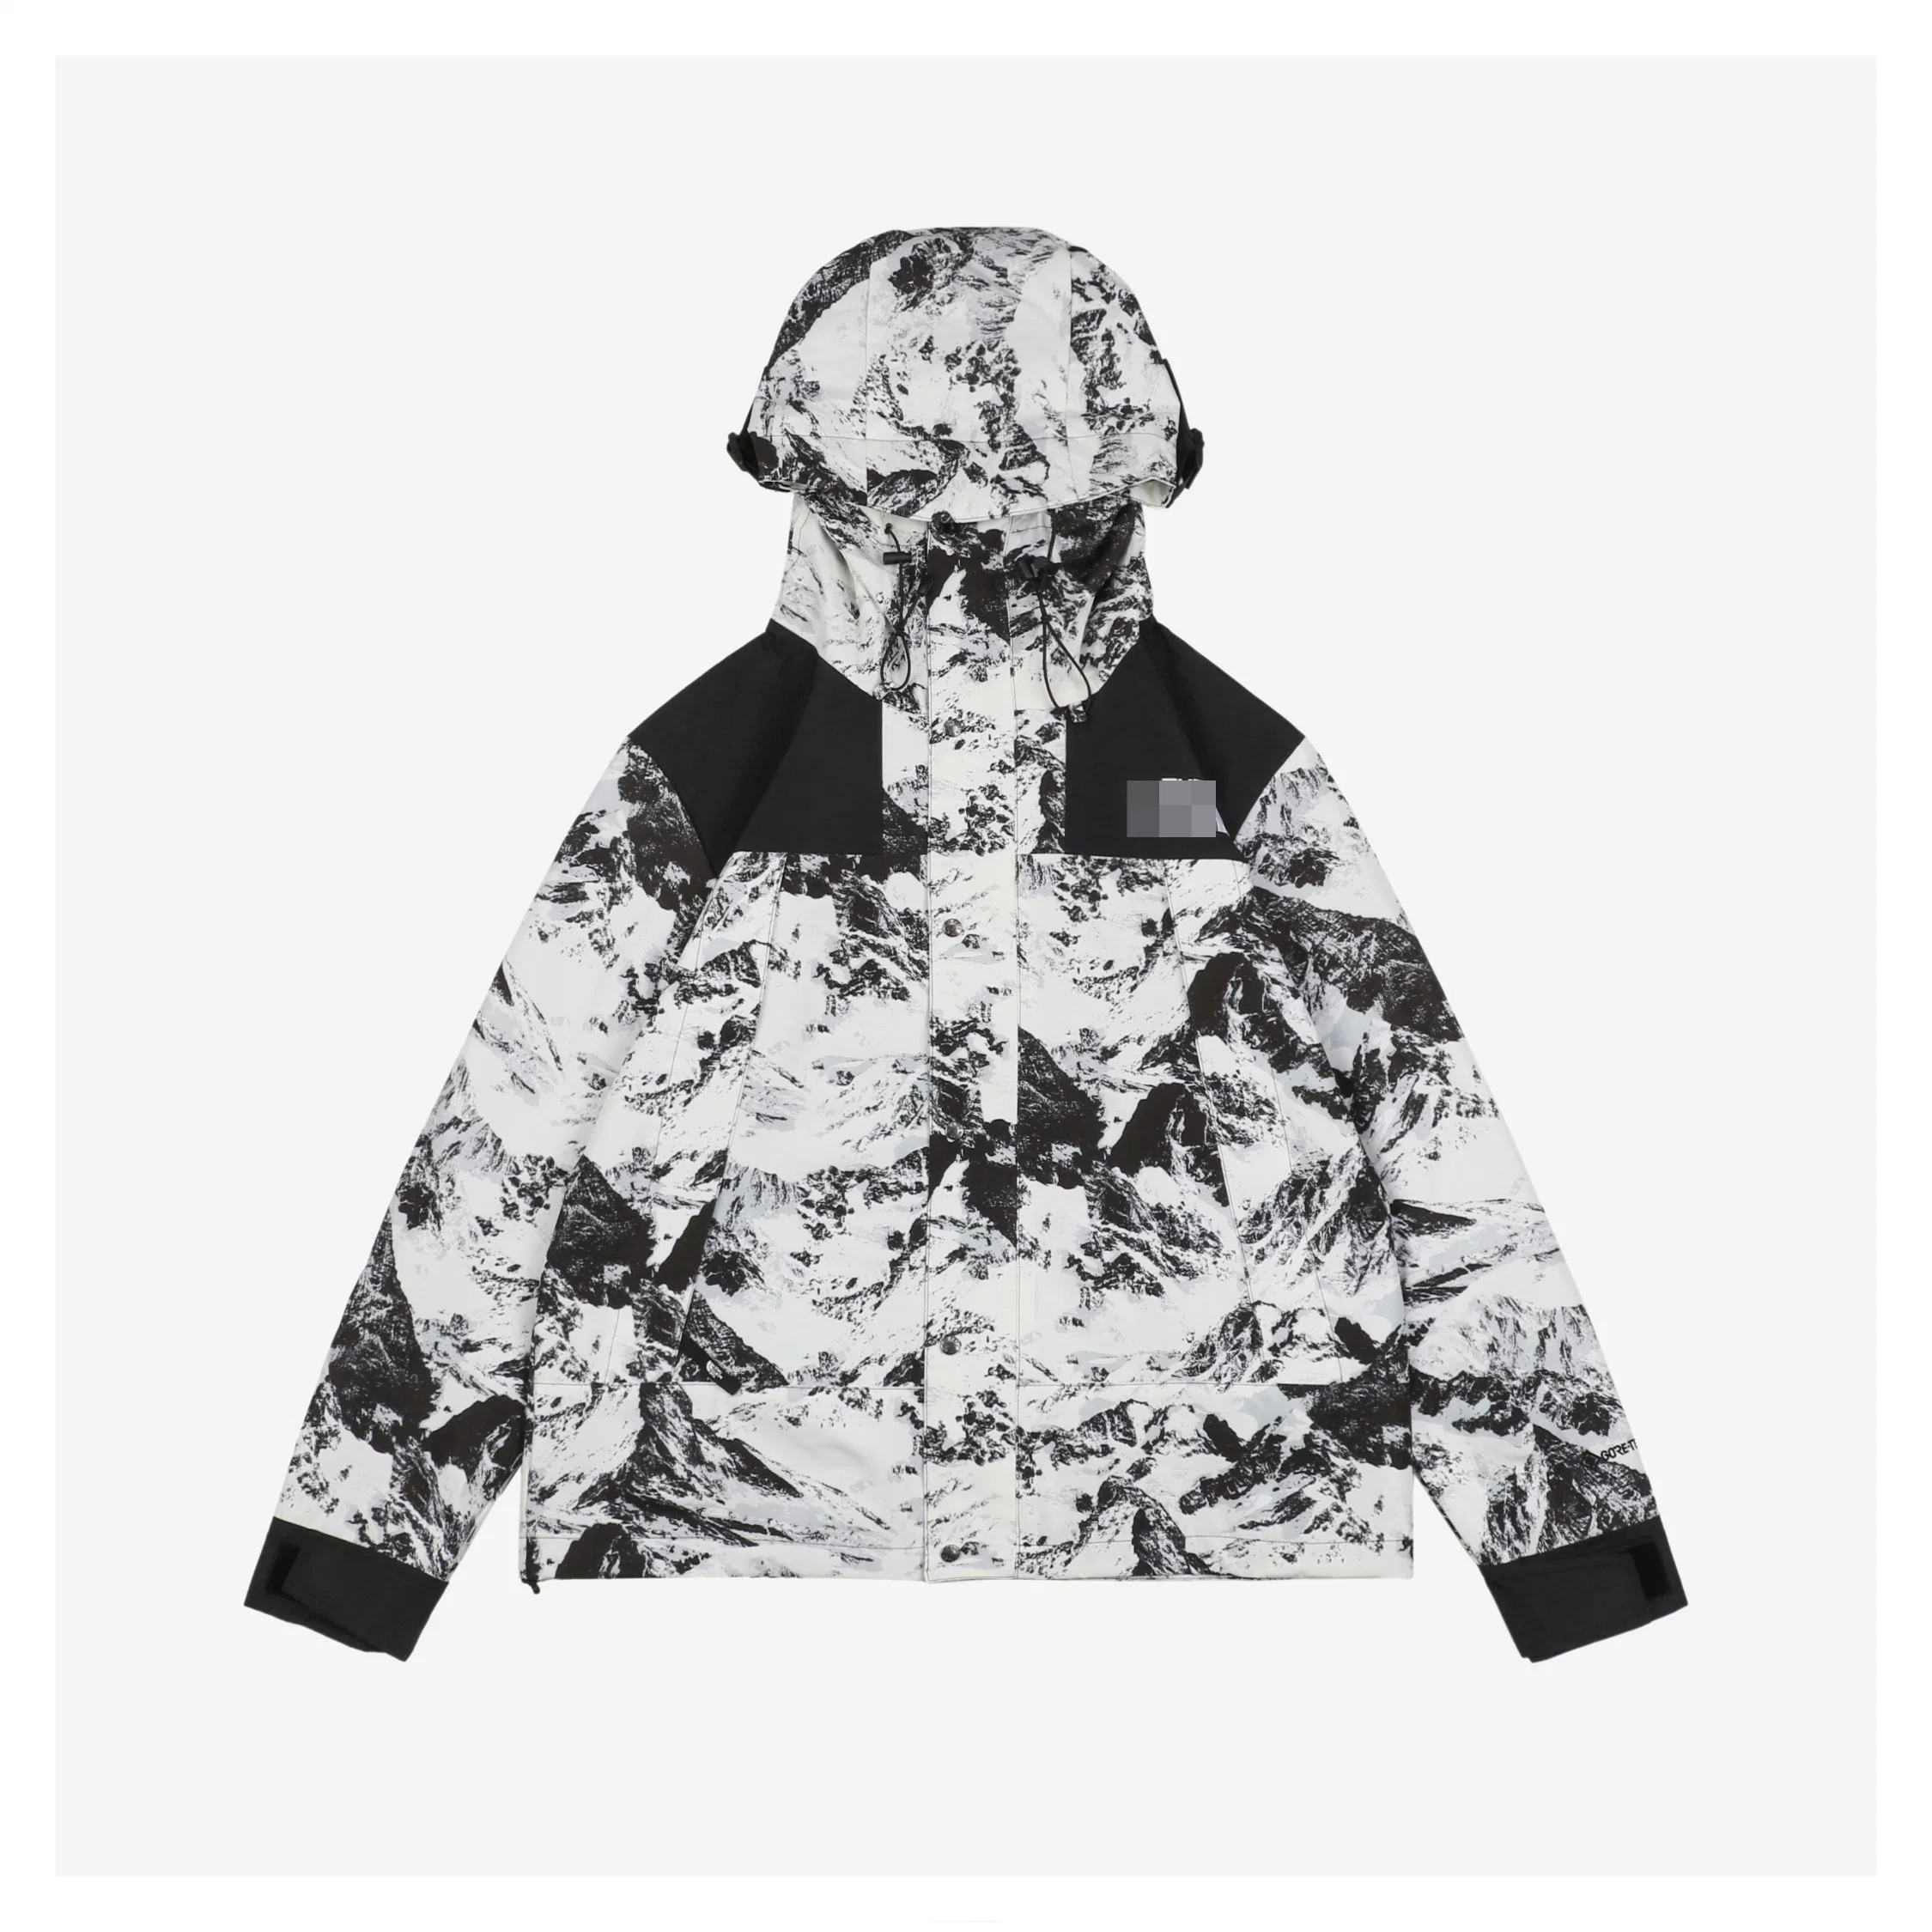 Мужские′ S женщины′ S Дизайнер бренд роскошь одежда одежда одежда водонепроницаемый Куртка для пеших прогулок дождевая куртка Зимняя наружная осенняя соски